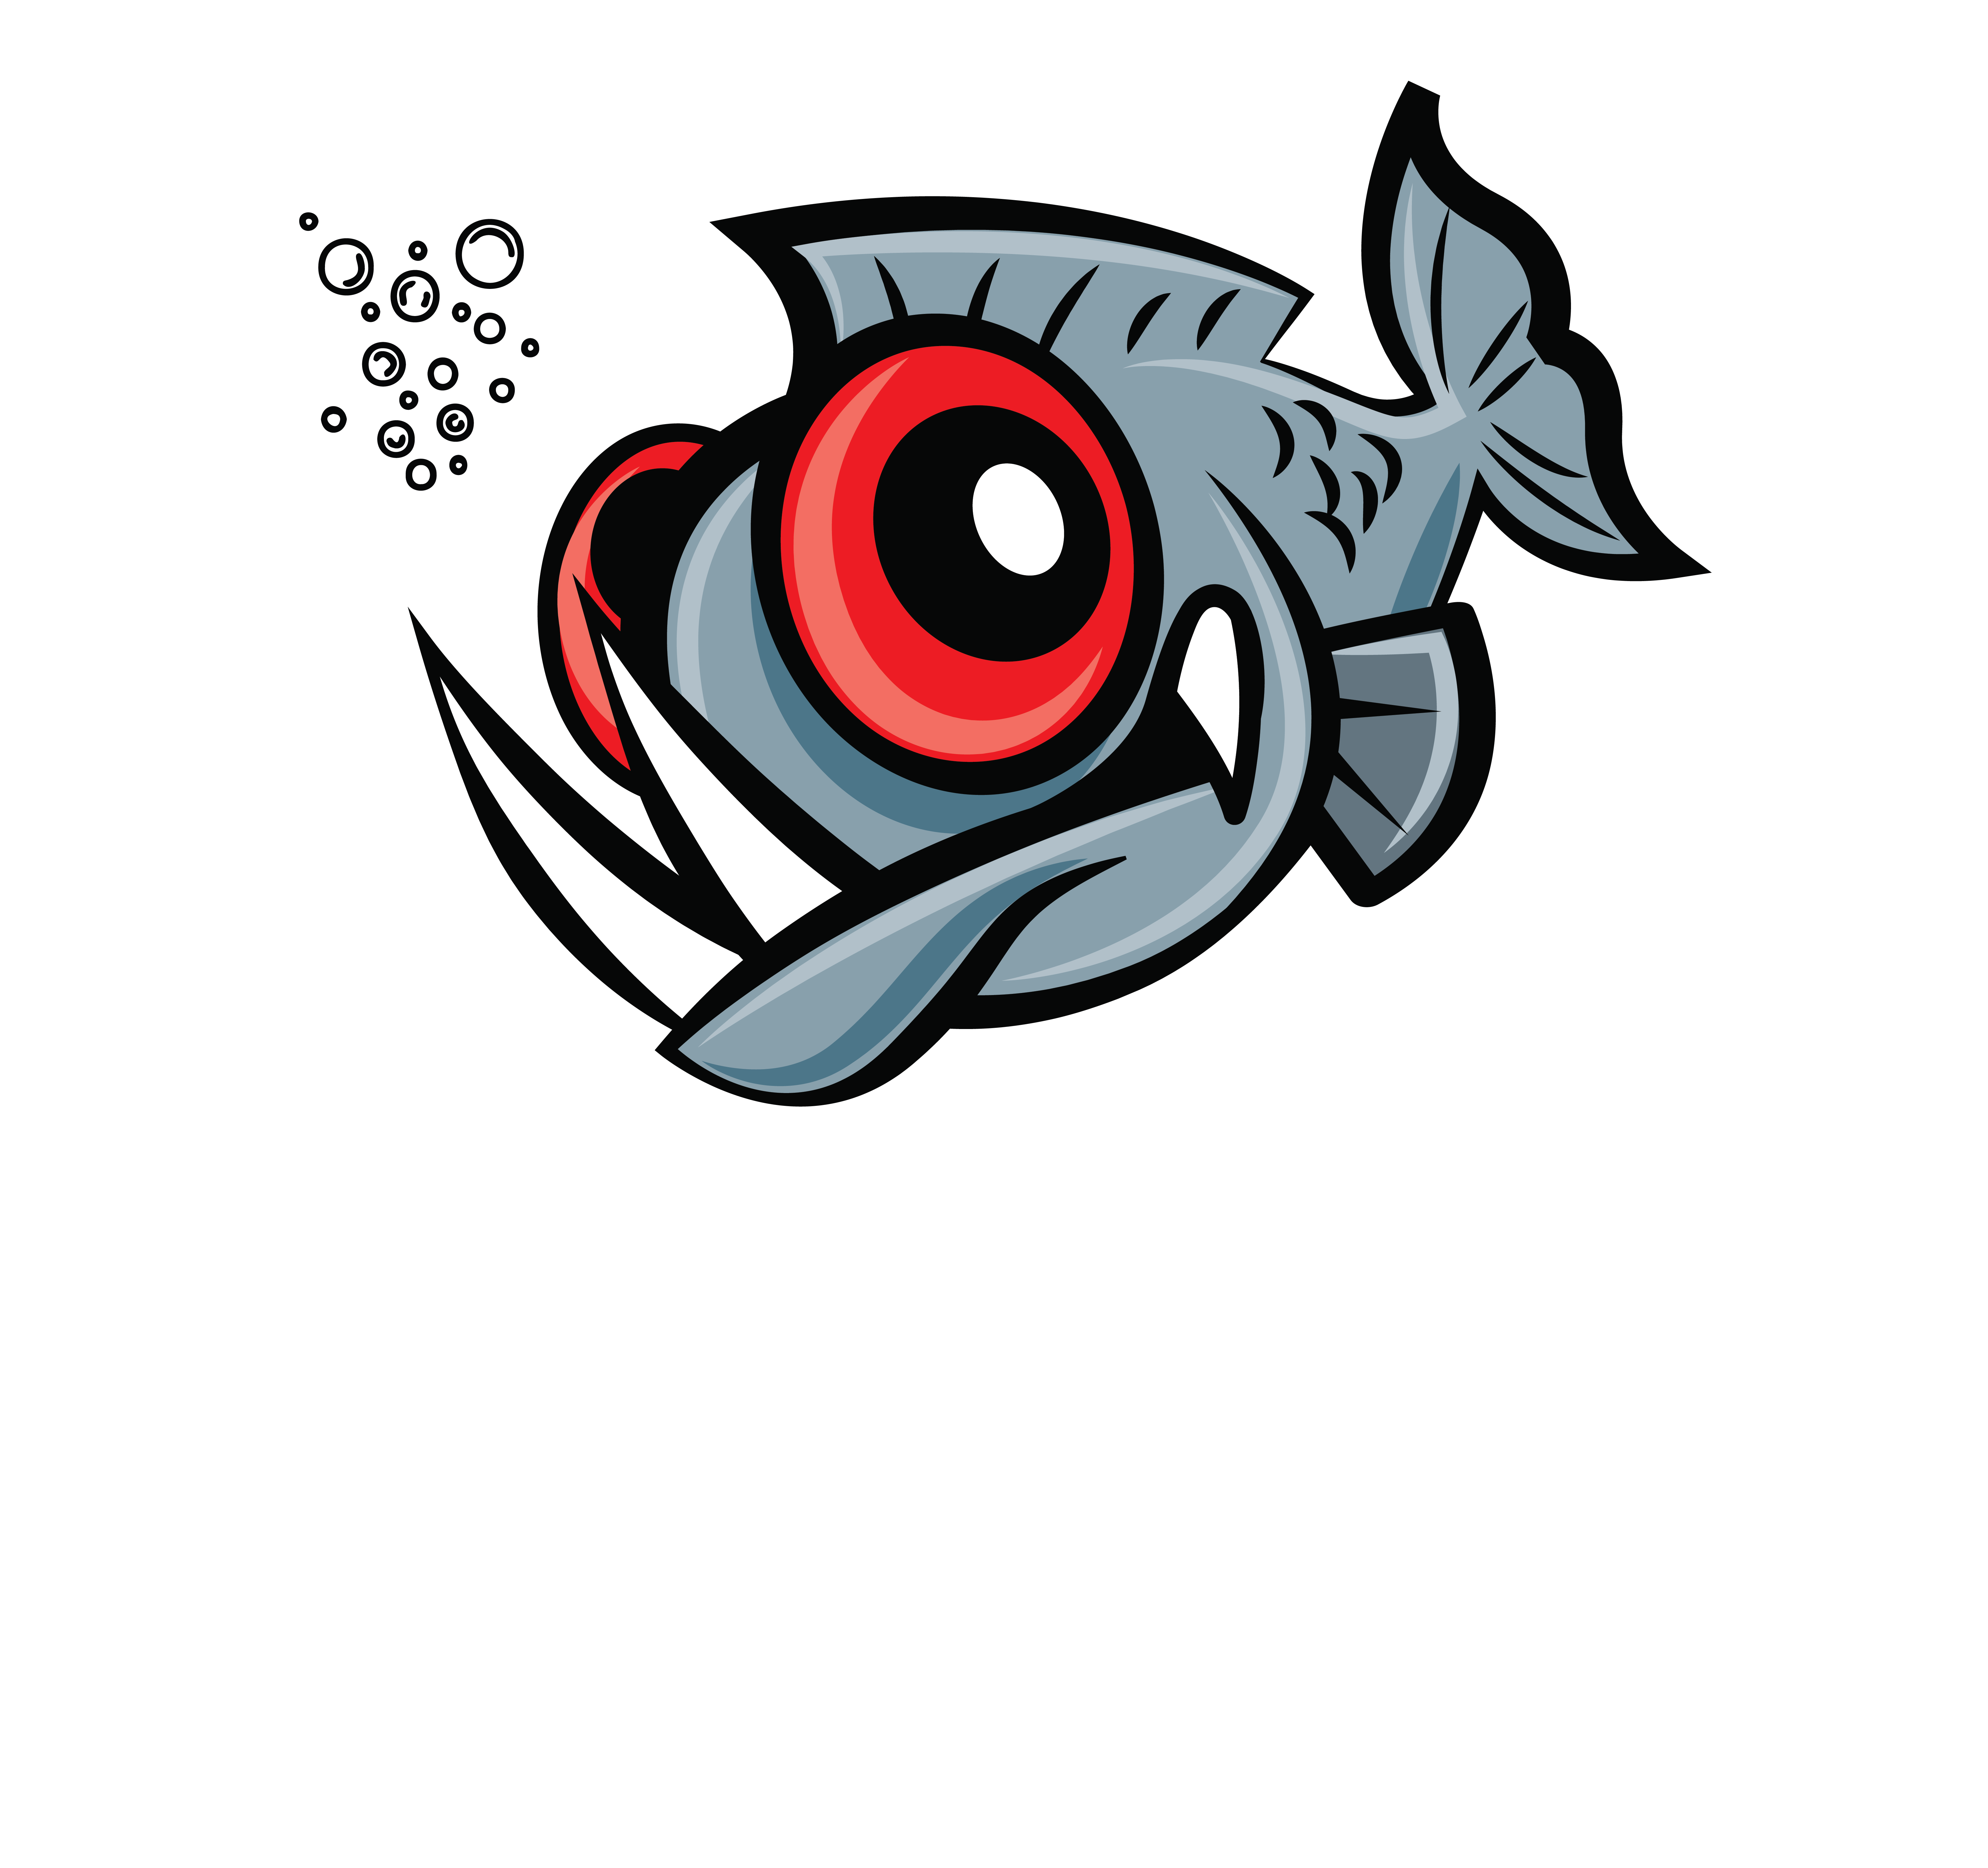 PiranhO₂